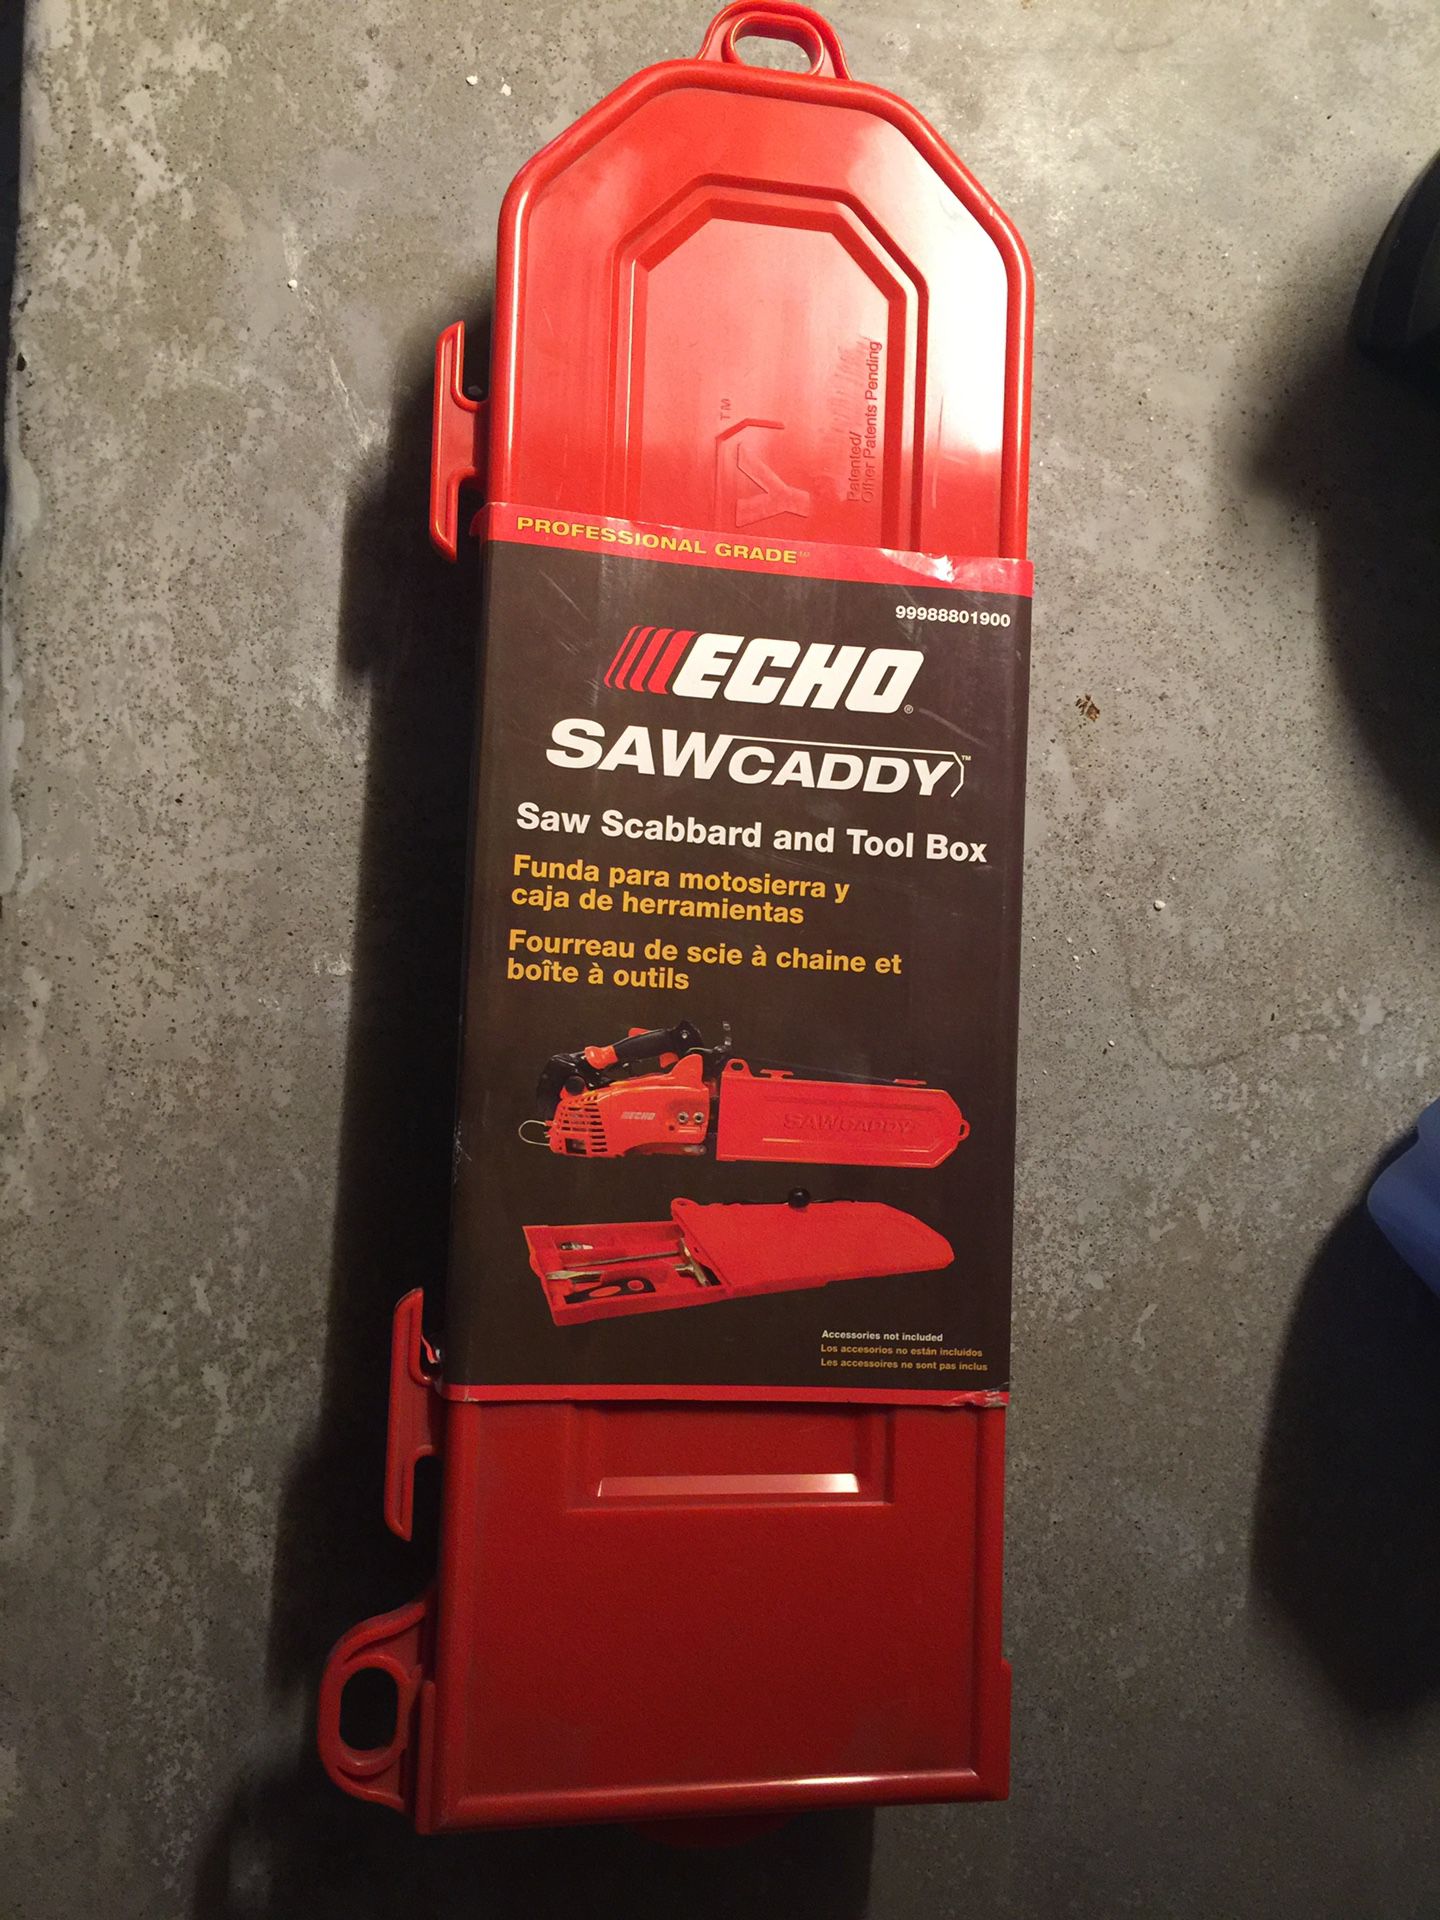 Echo Saw Caddy tool box Oem